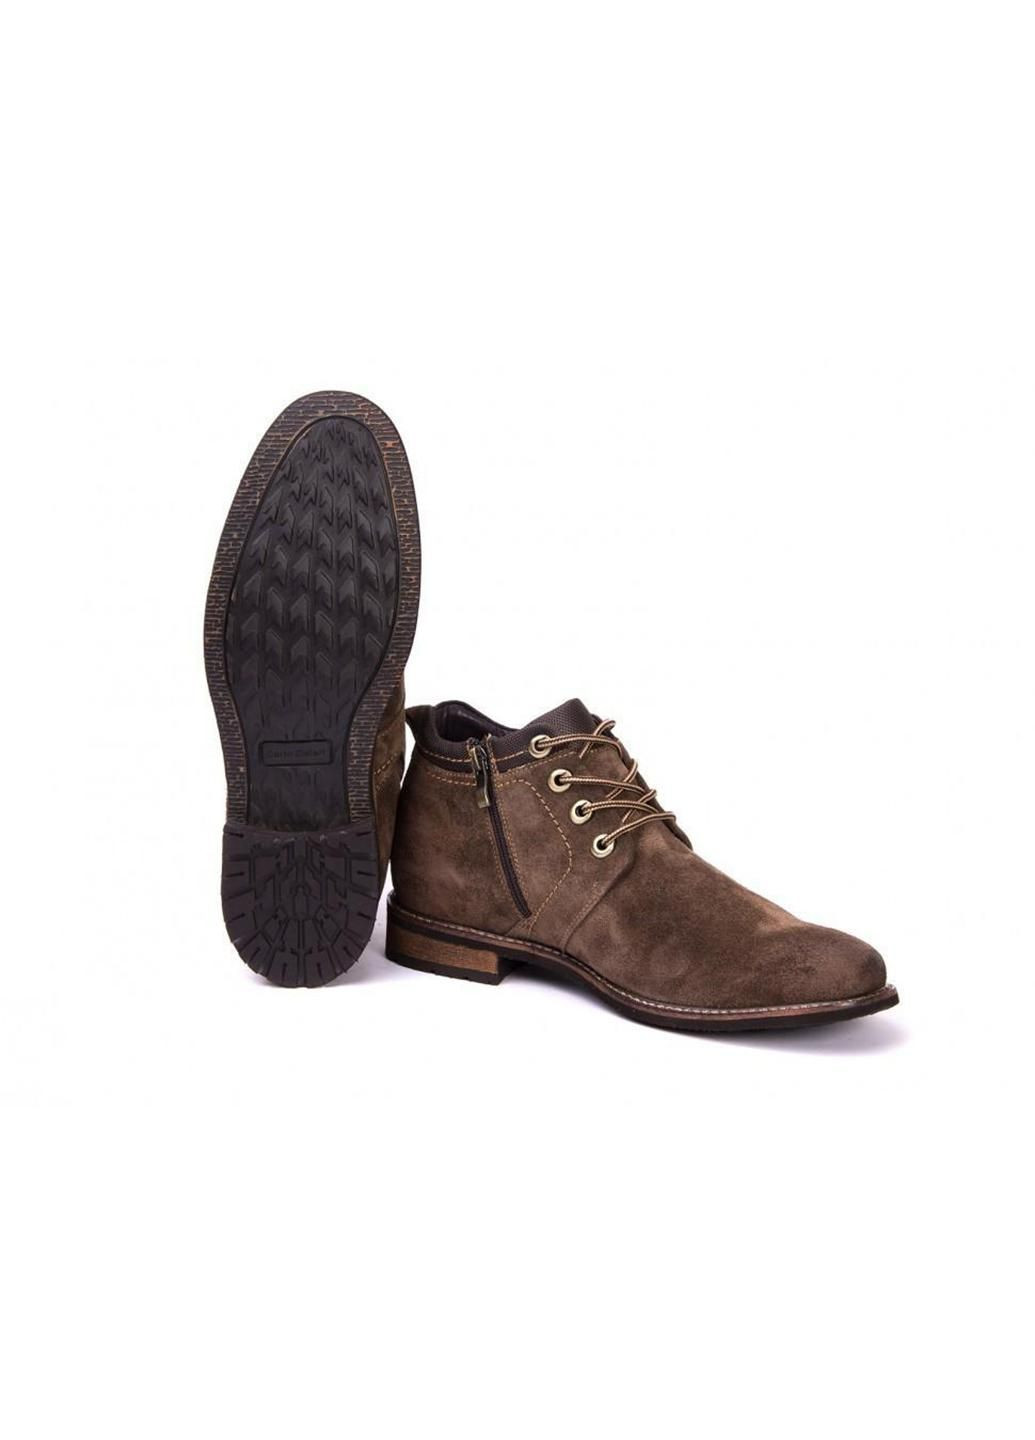 Коричневые зимние ботинки 7144455 цвет коричневый Carlo Delari